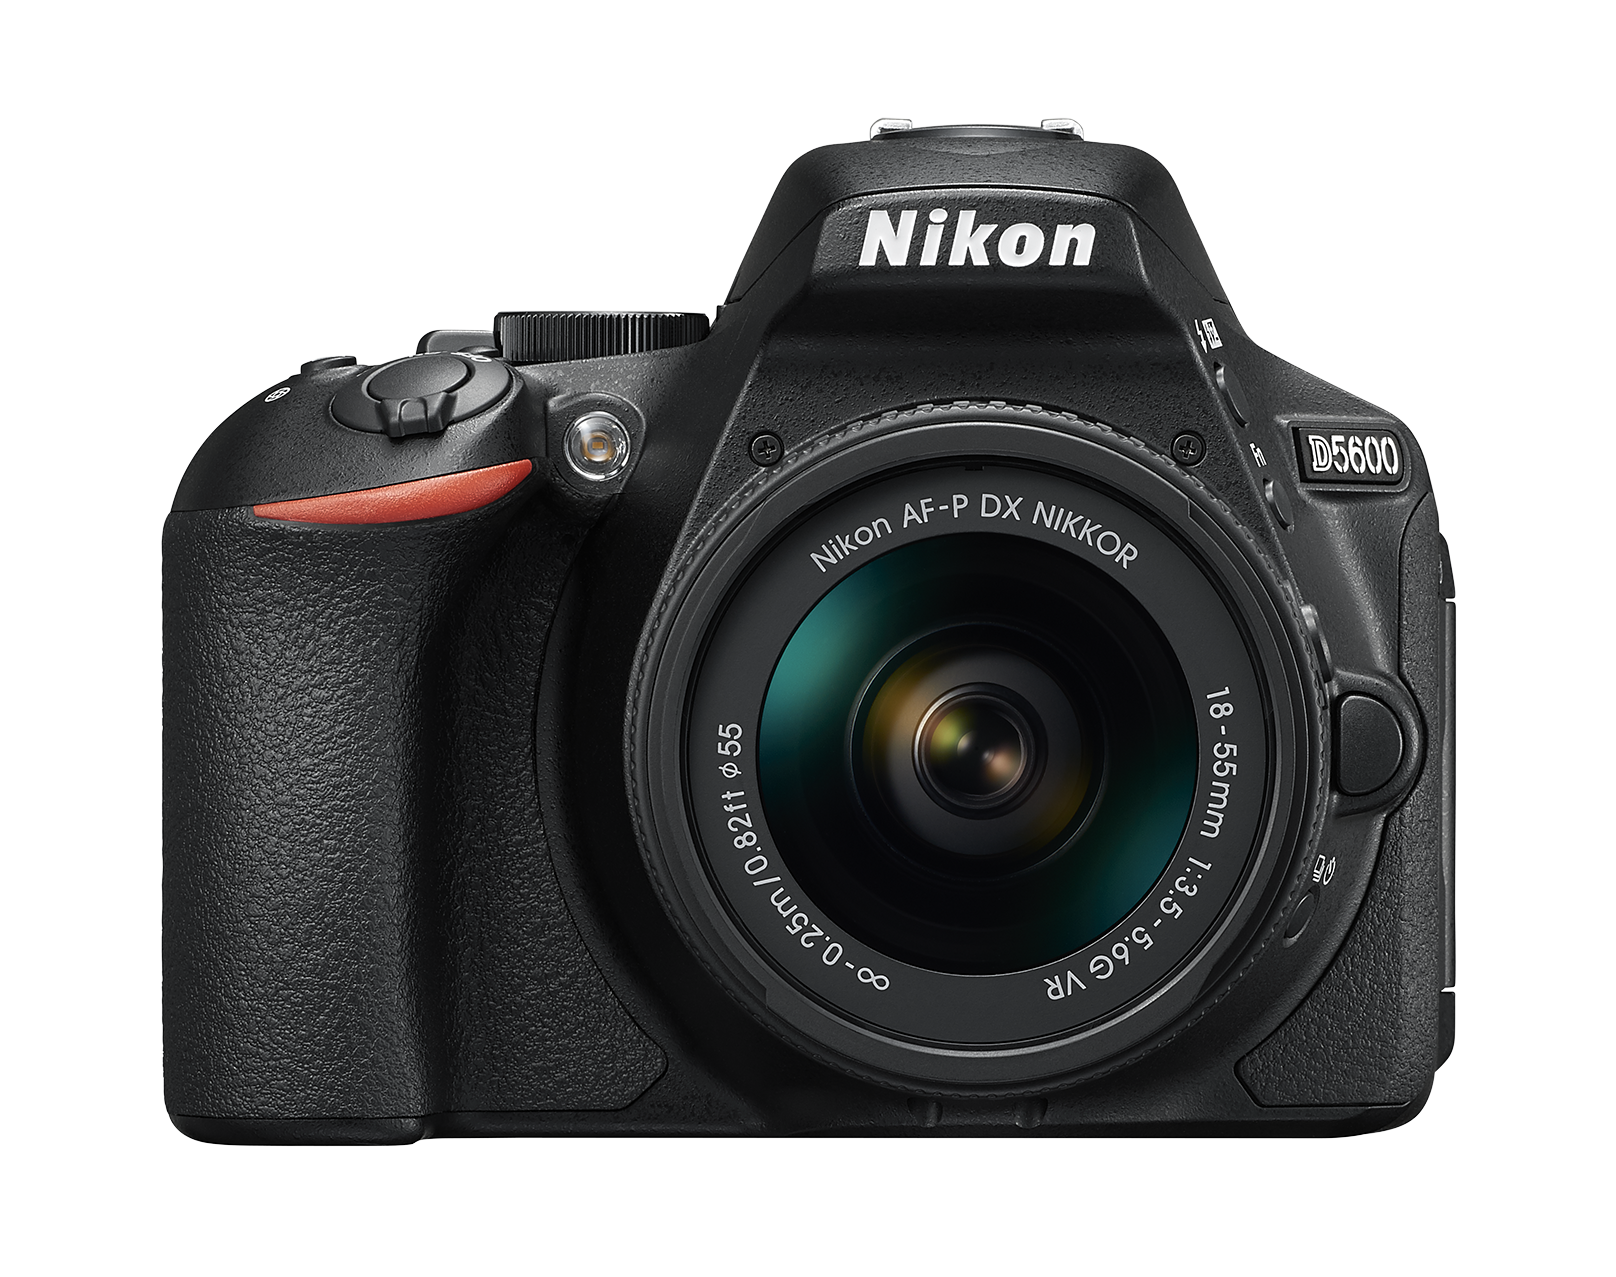 Mucama limpiar preferir Nikon: Cámaras digitales, objetivos y accesorios para fotografía